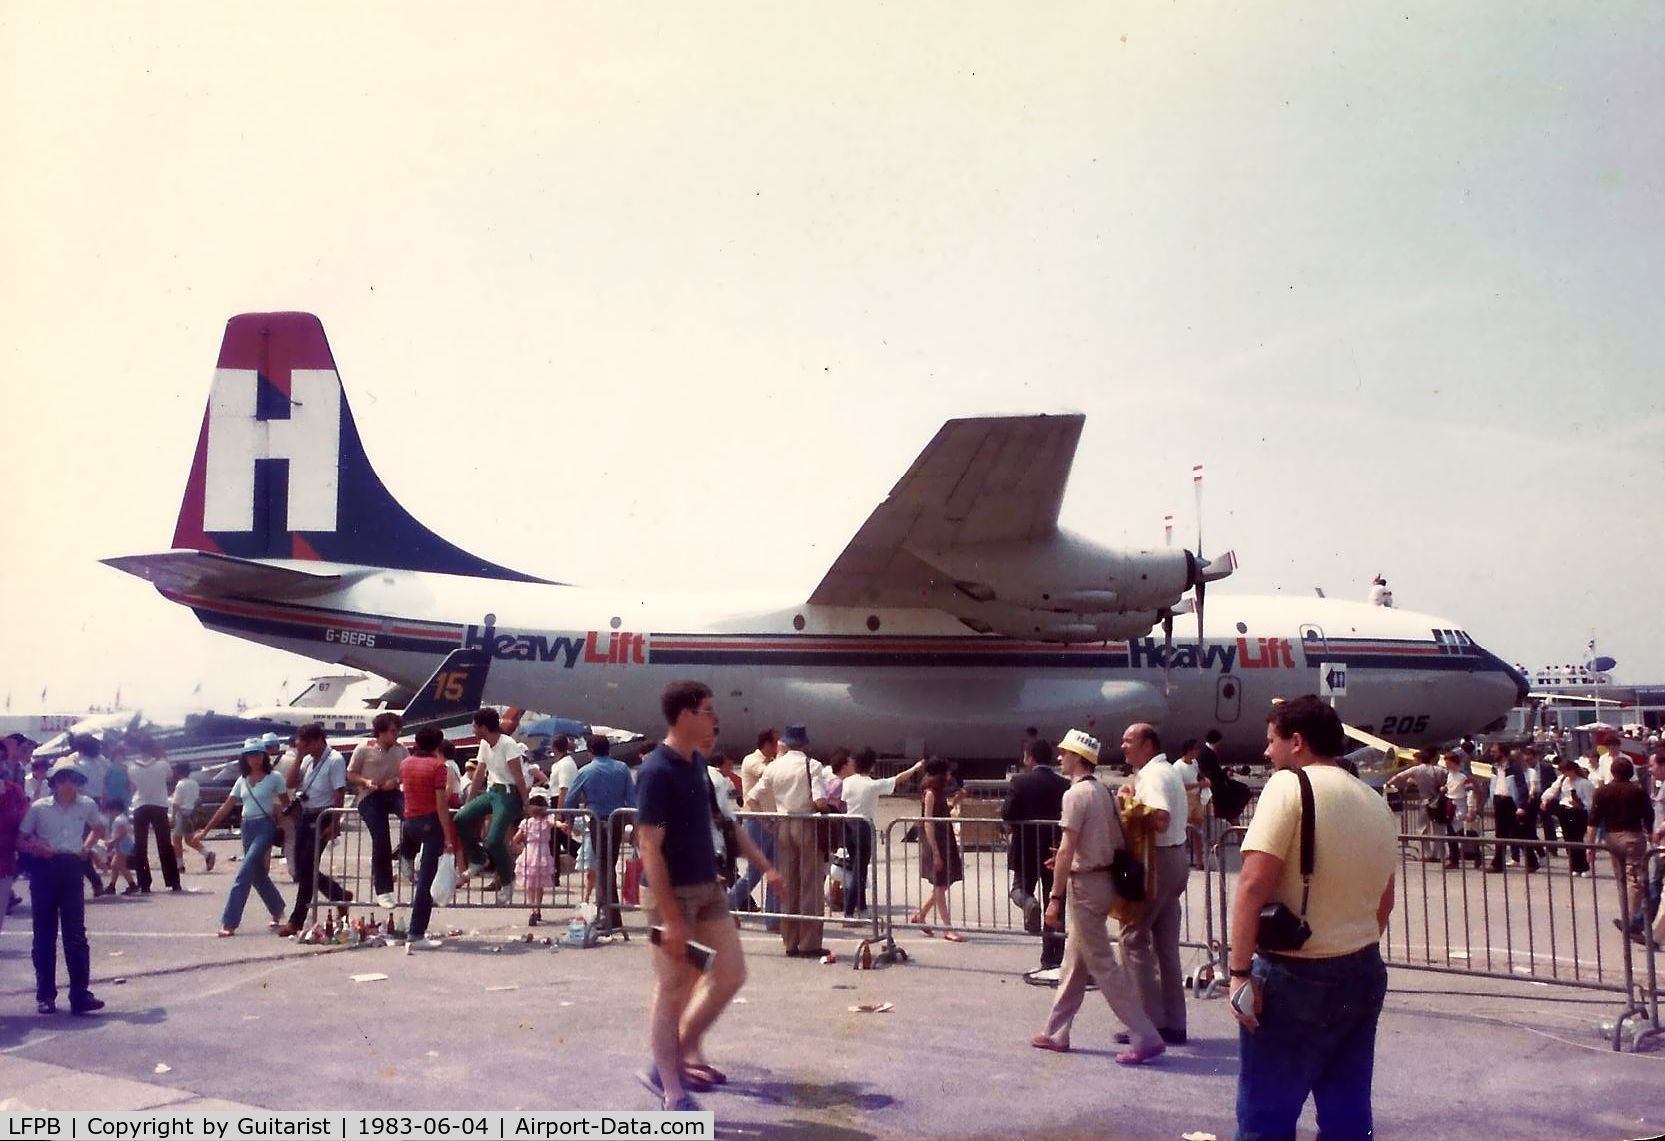 Paris Airport,  France (LFPB) - Paris Air Show at Le Bourget in June 1983 